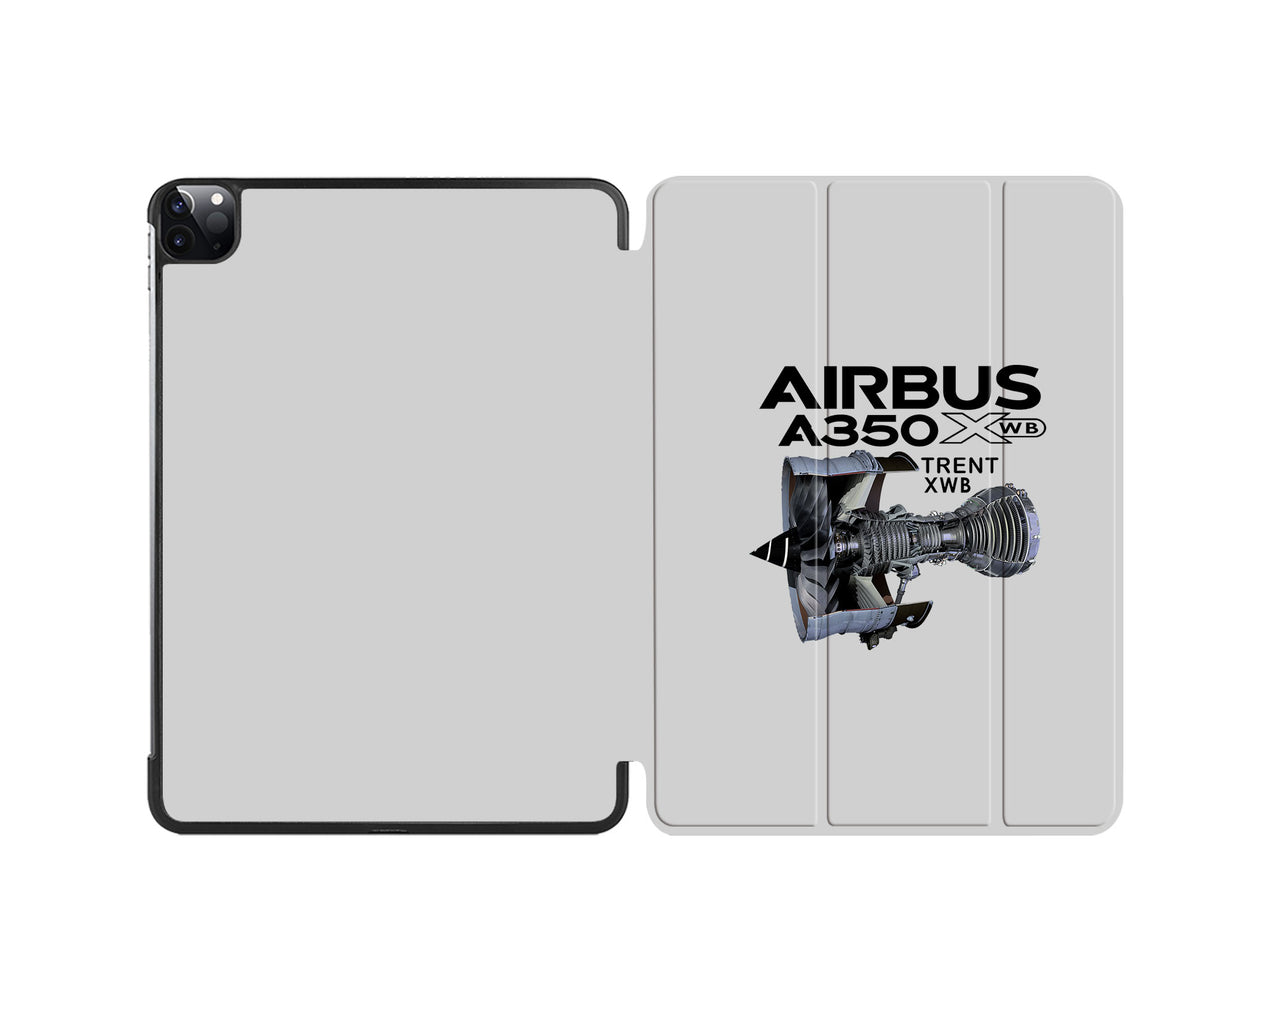 Airbus A350 & Trent Wxb Engine Designed iPad Cases